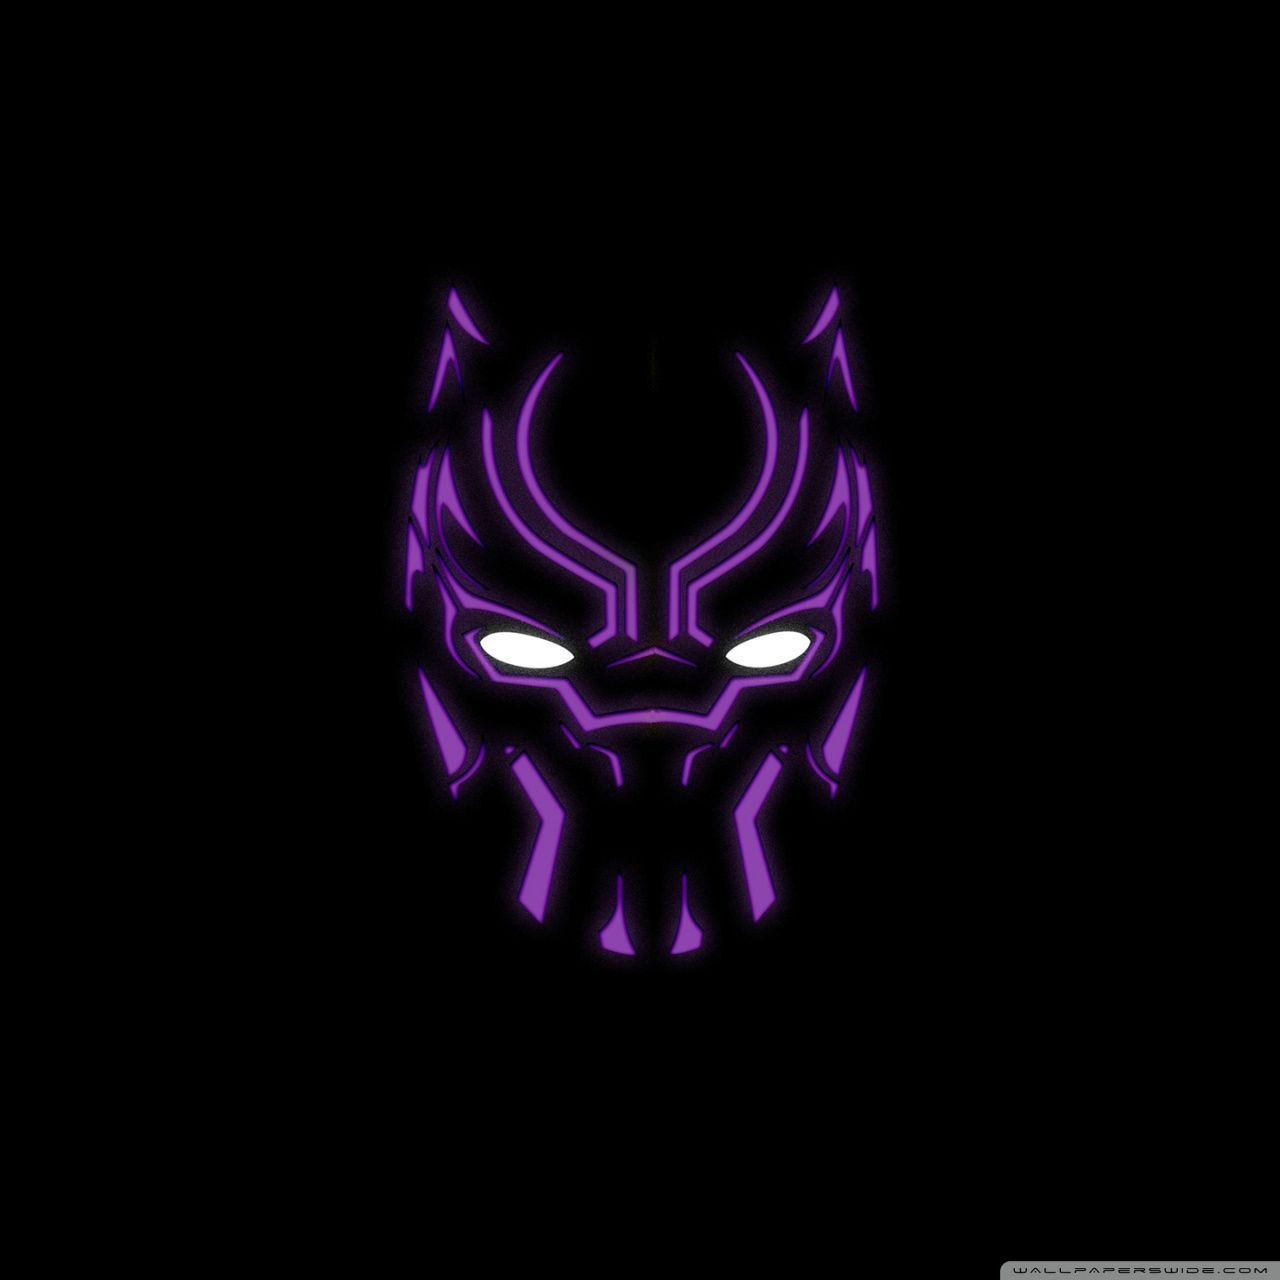 Black Panther Logo Wallpaper Free Black Panther Logo Background